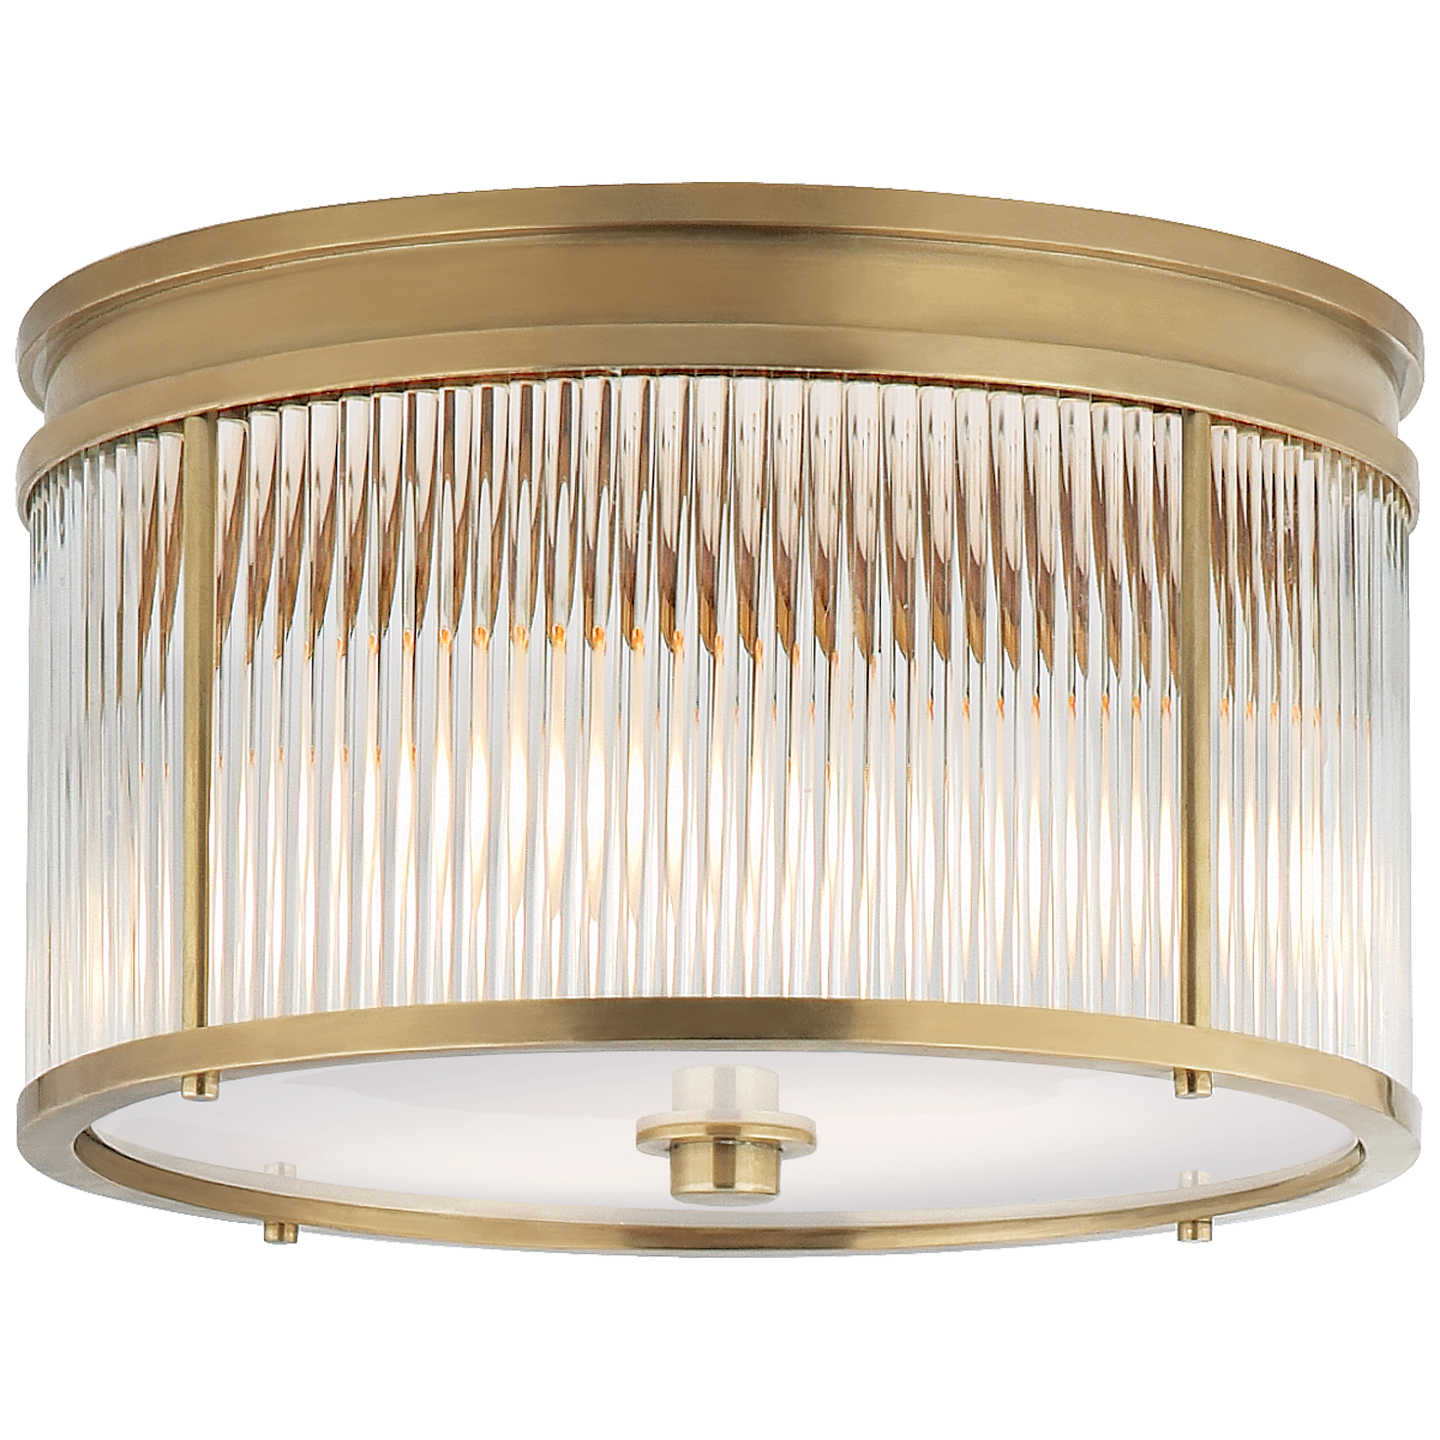 Allen Medium Round Brass Ceiling Light 